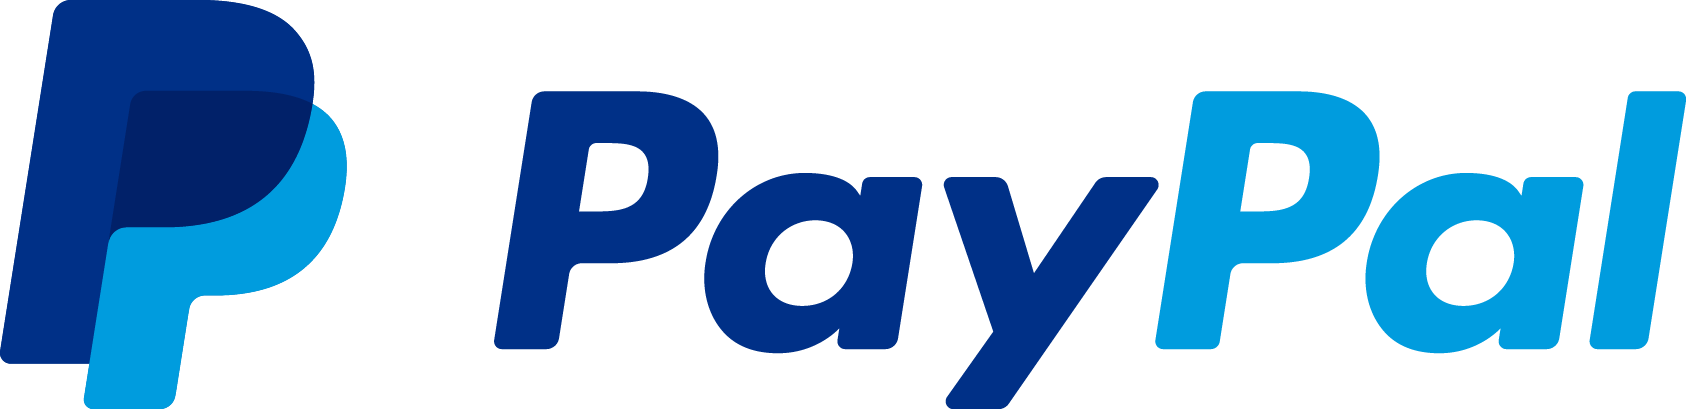 Paypal Einloggen Probleme